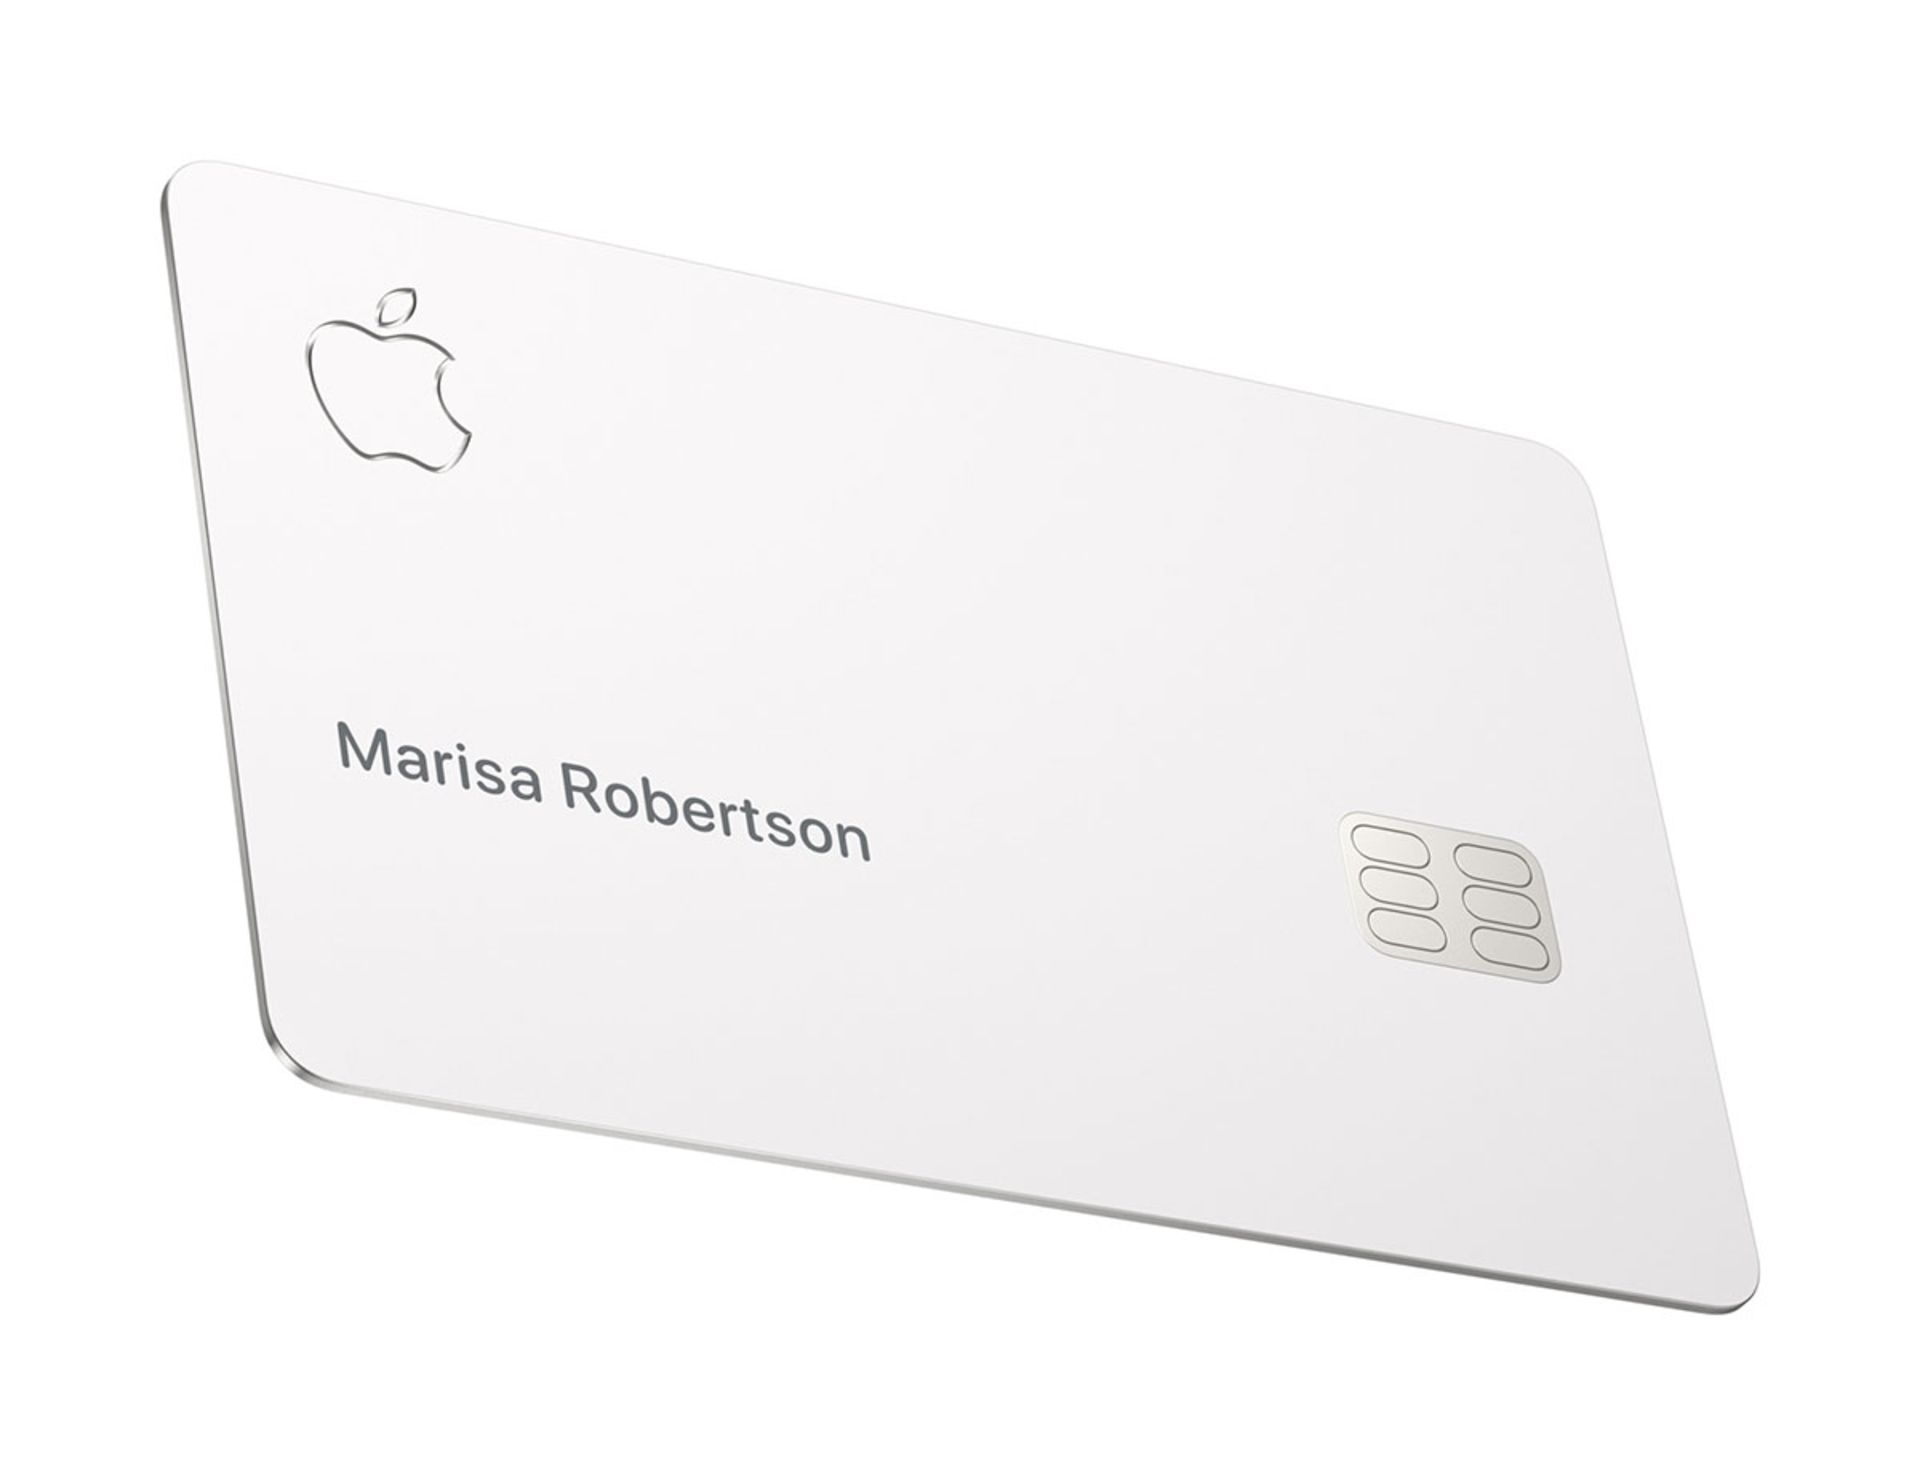 اپل کارت / Apple Card